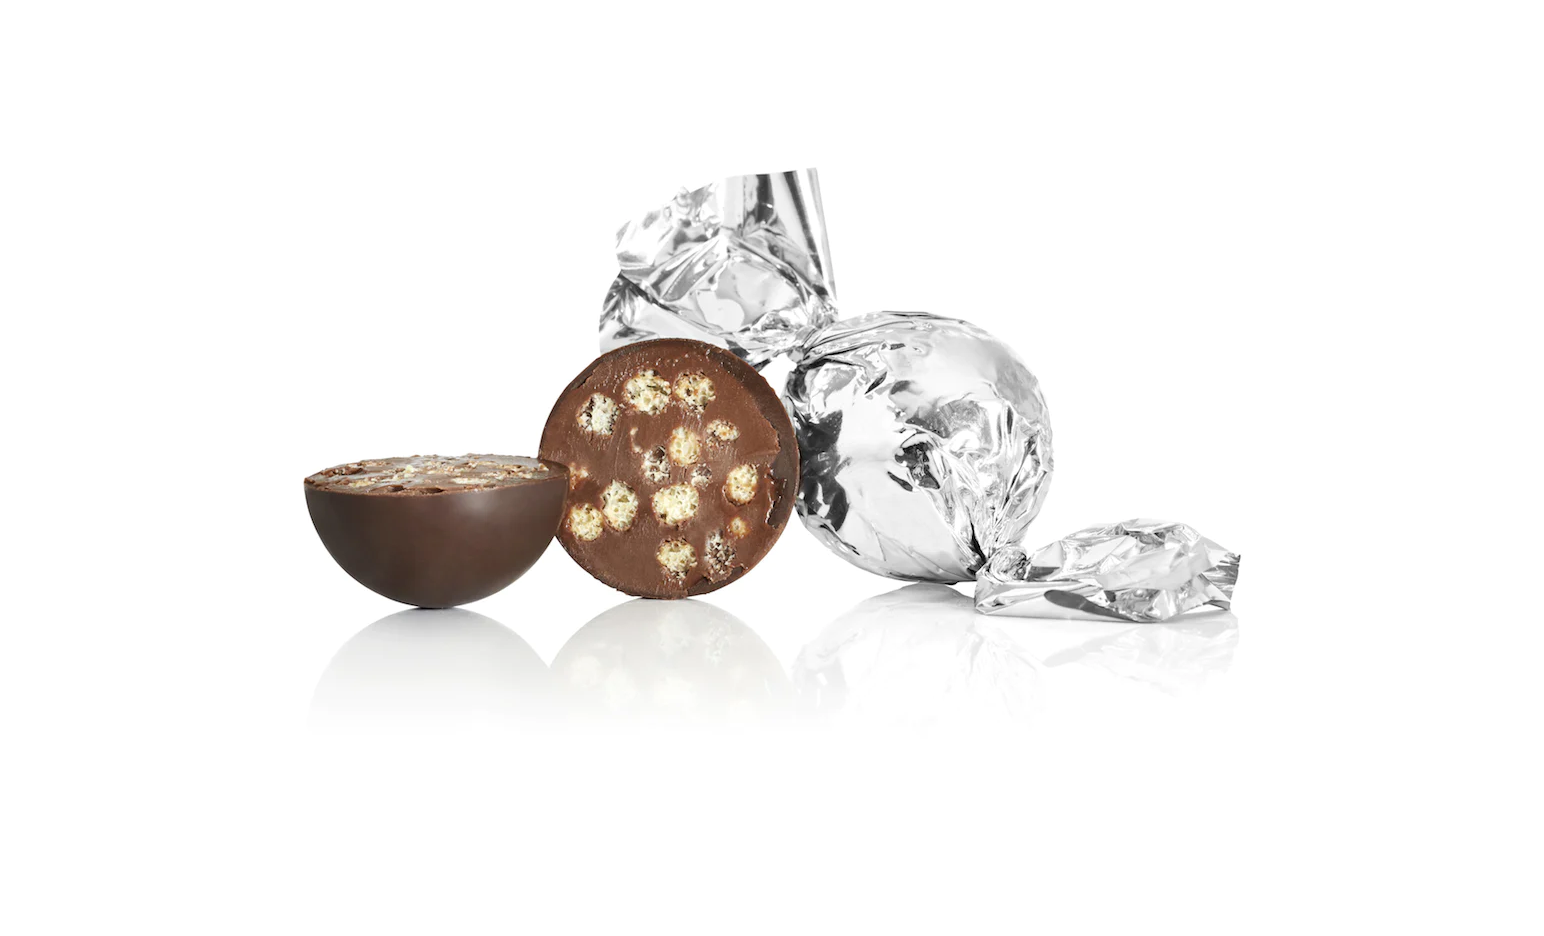 Brug Fyldt chokoladekugle fra Cocoture i sølv papir - Mørk chokolade med crisp til en forbedret oplevelse